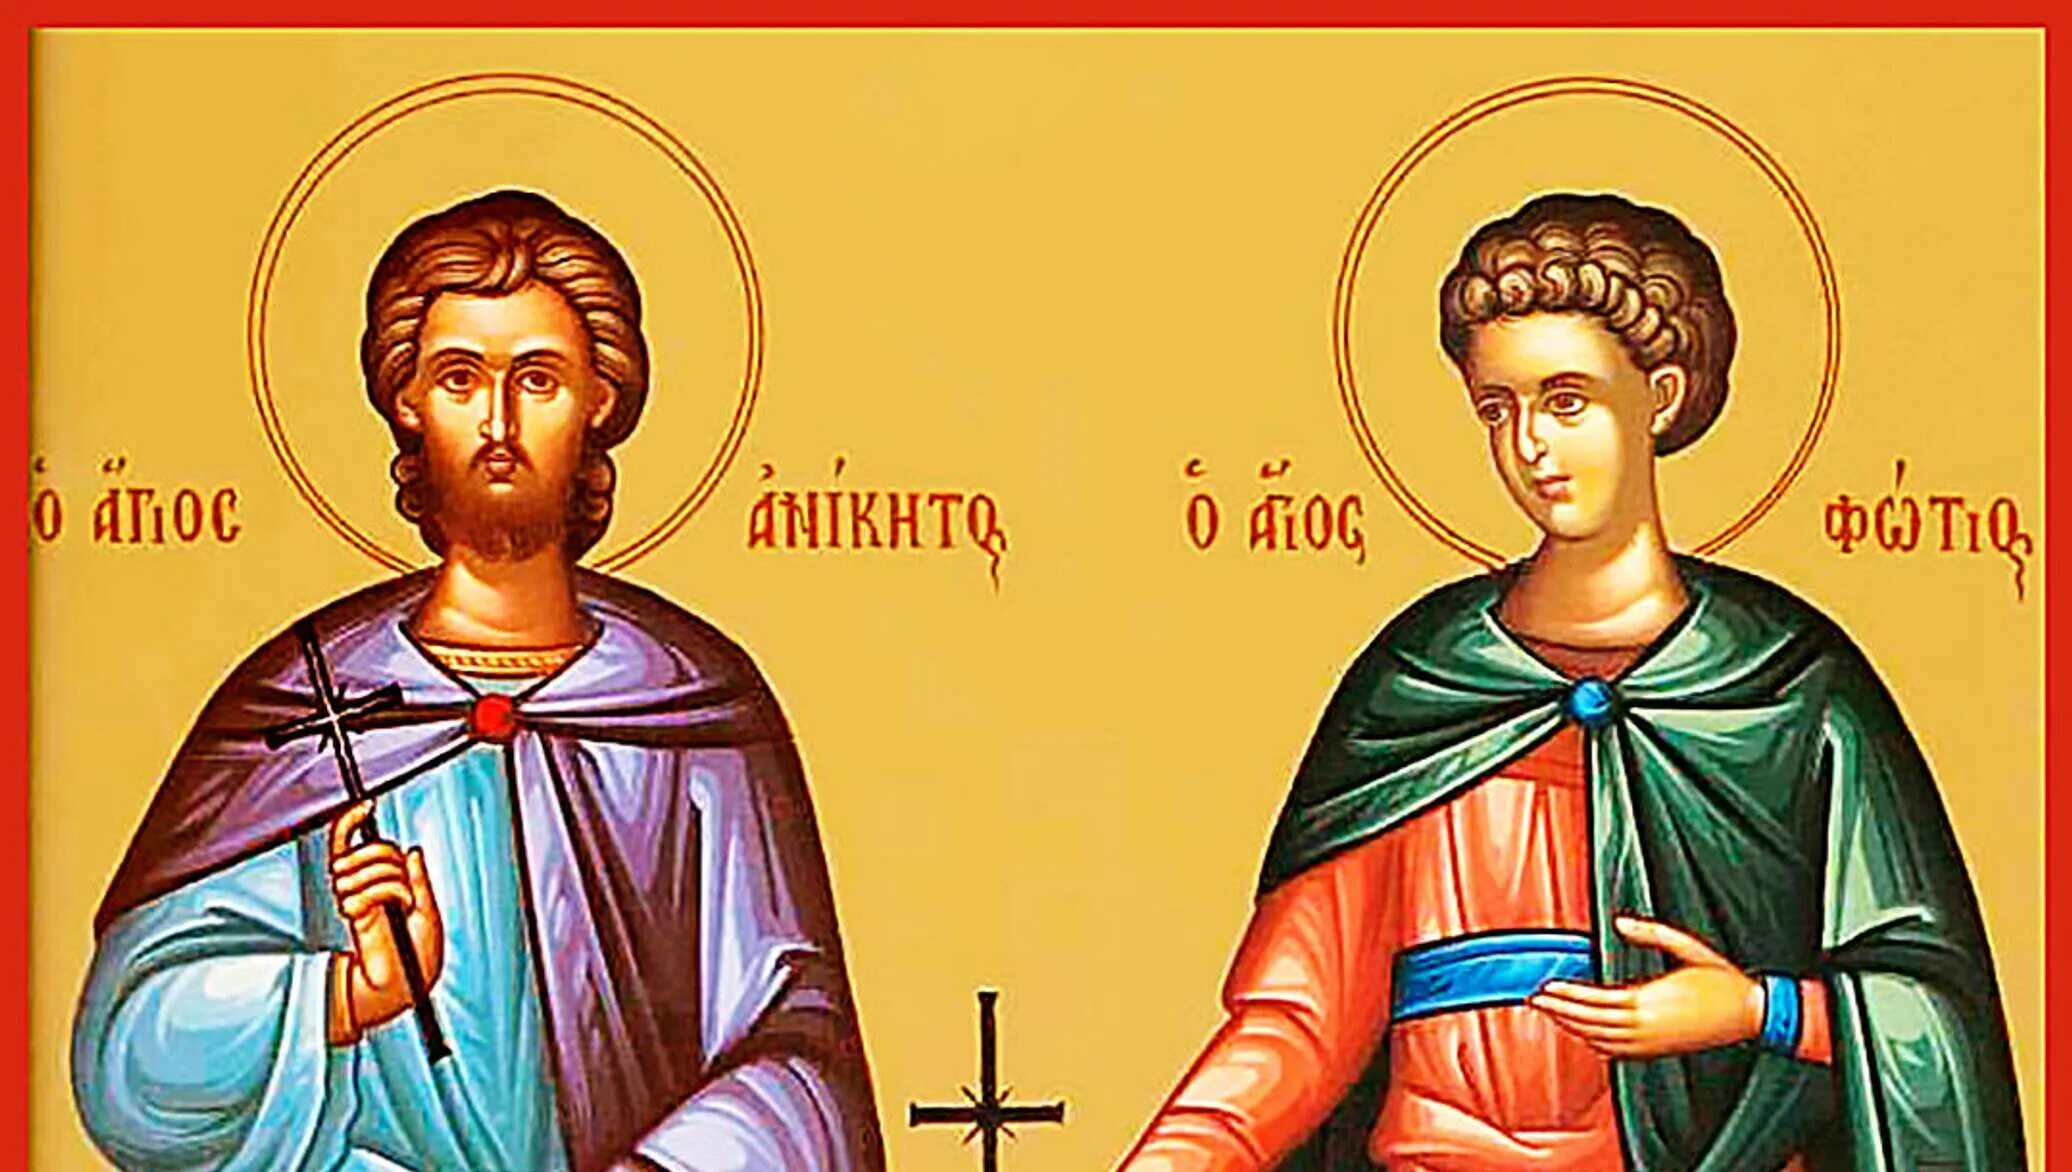 Праздник 25 августа. Святые Фотий и Аникита. 25 Августа день Фотия и Аникиты. Мученики Фотий и Аникита.